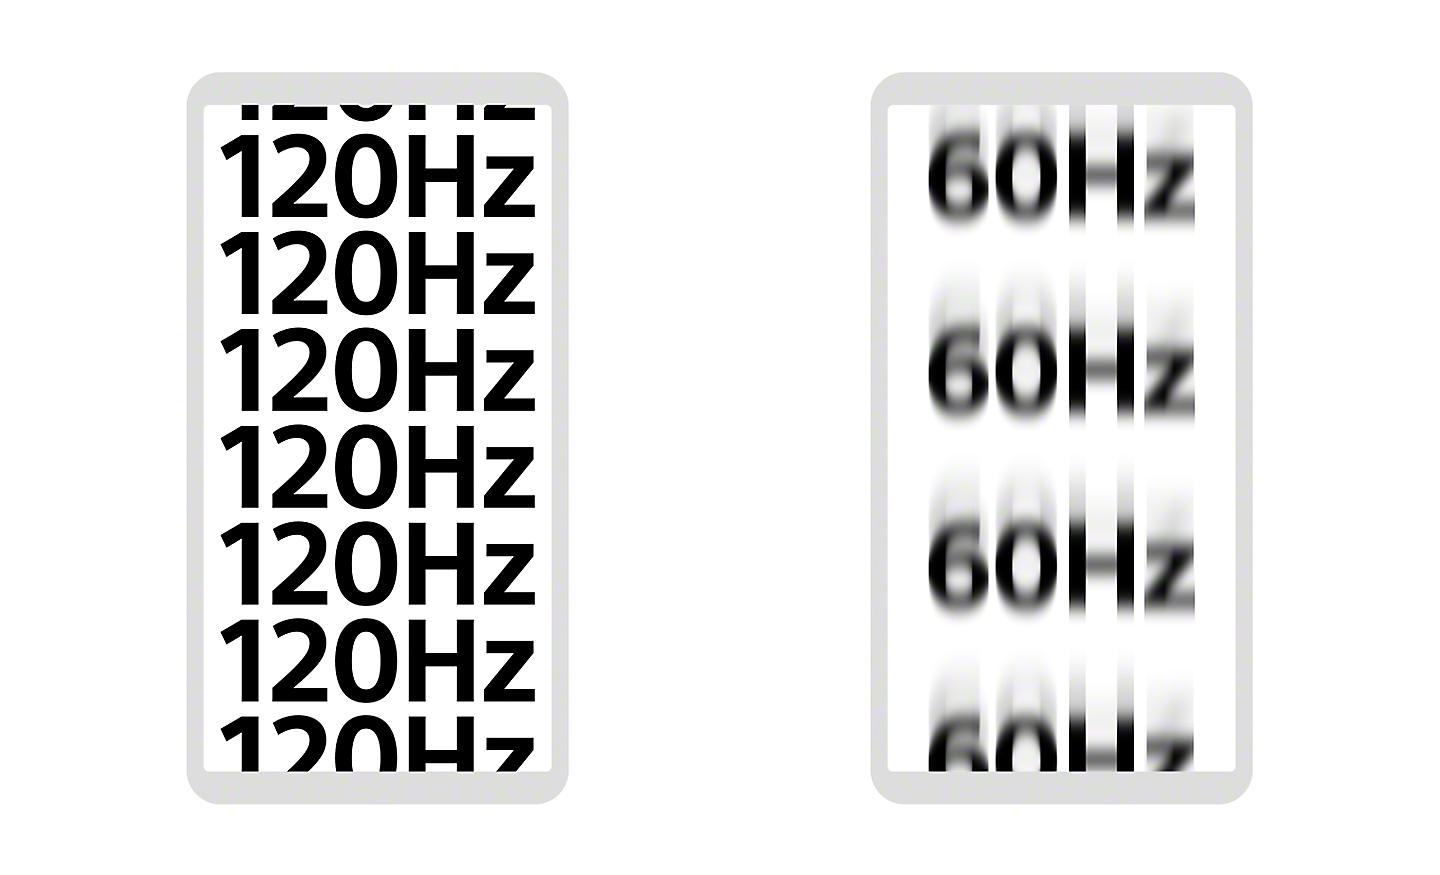 Illustration représentant deux smartphones : sur l’un, l’inscription "120Hz" est écrite plusieurs fois de façon nette, et sur l’autre, l’inscription « 60 Hz » est écrite plusieurs fois de façon floue